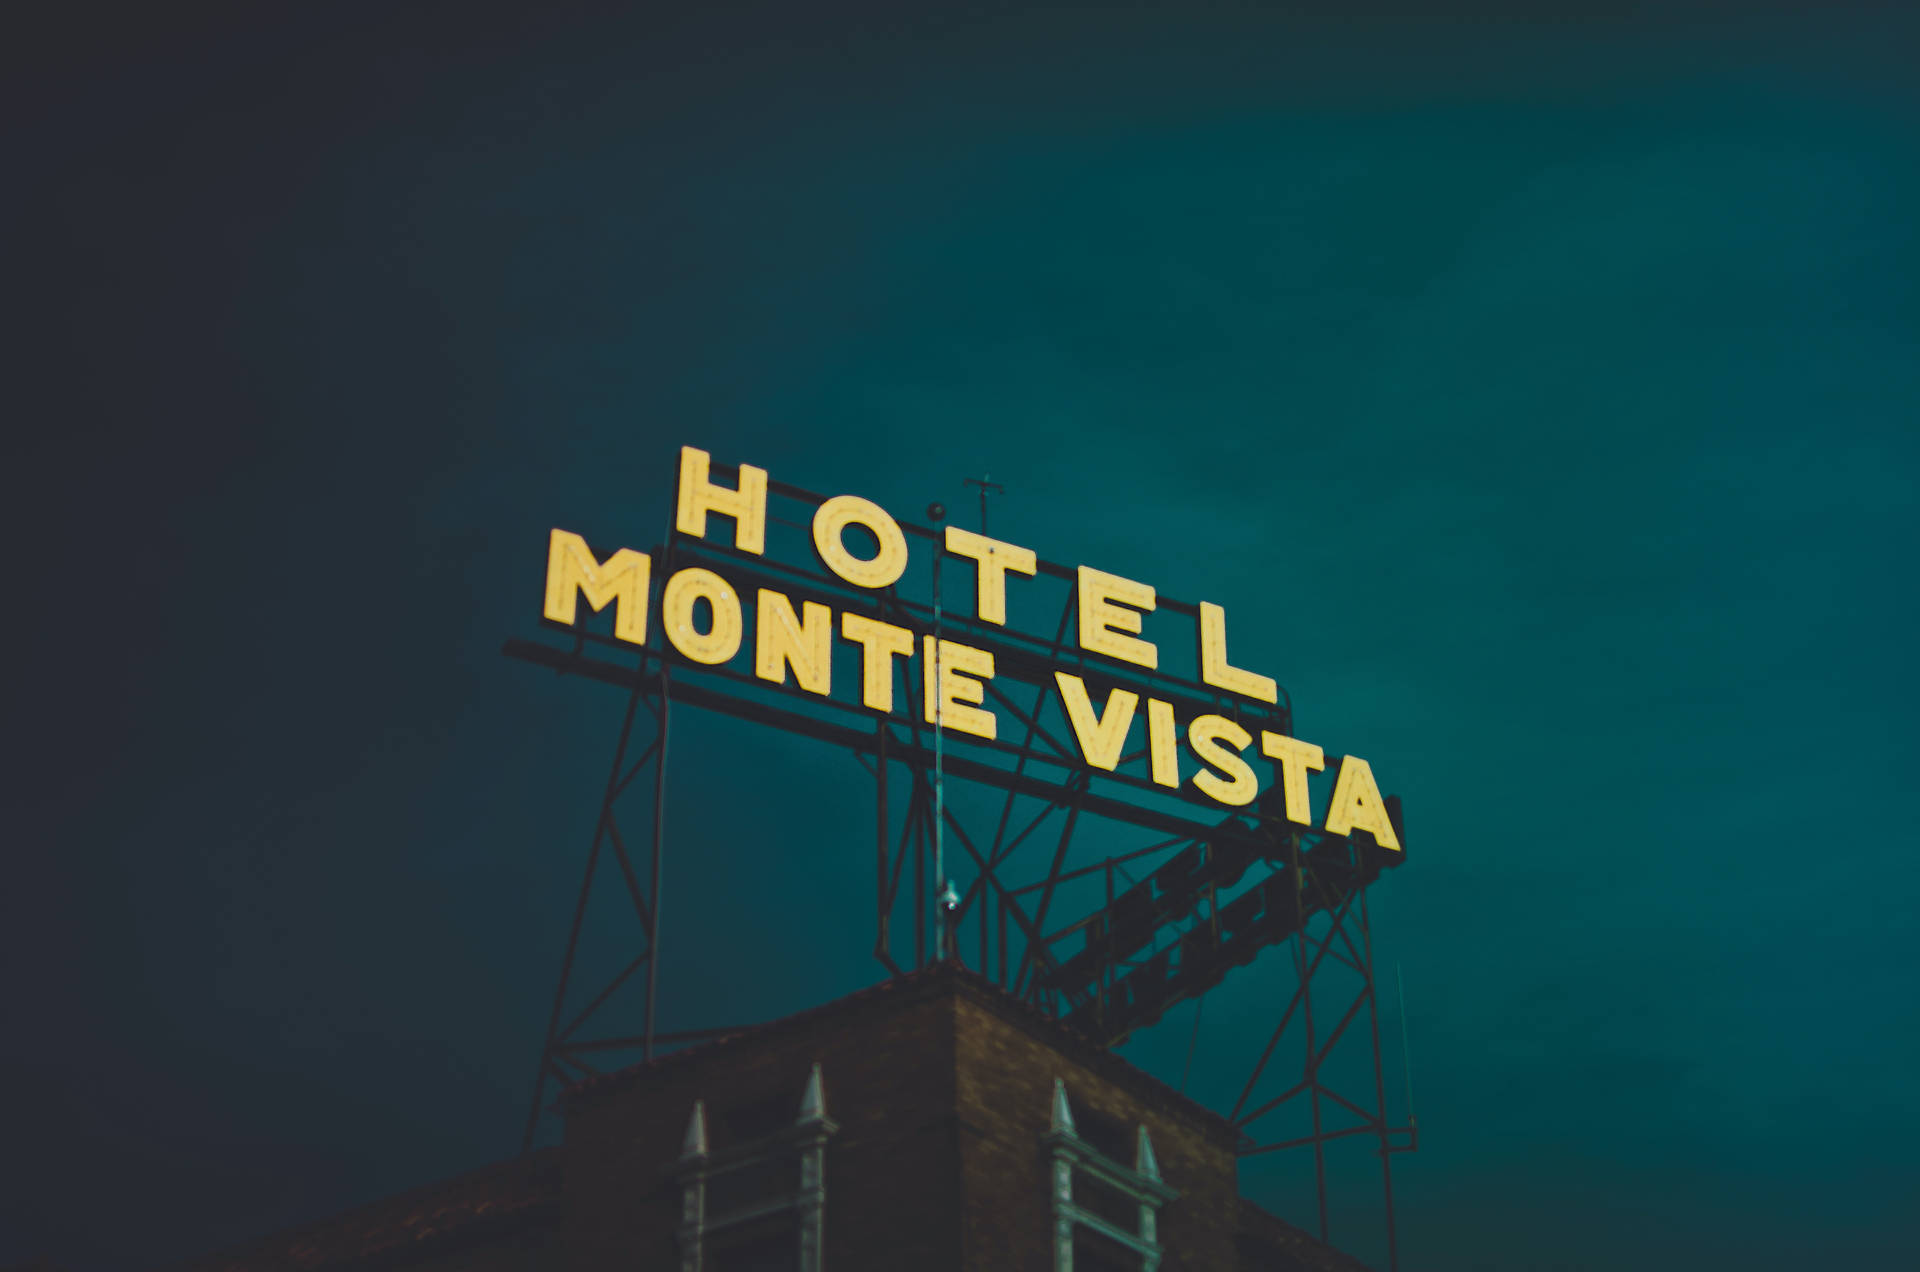 Hotelmonte Vista Schild Wallpaper